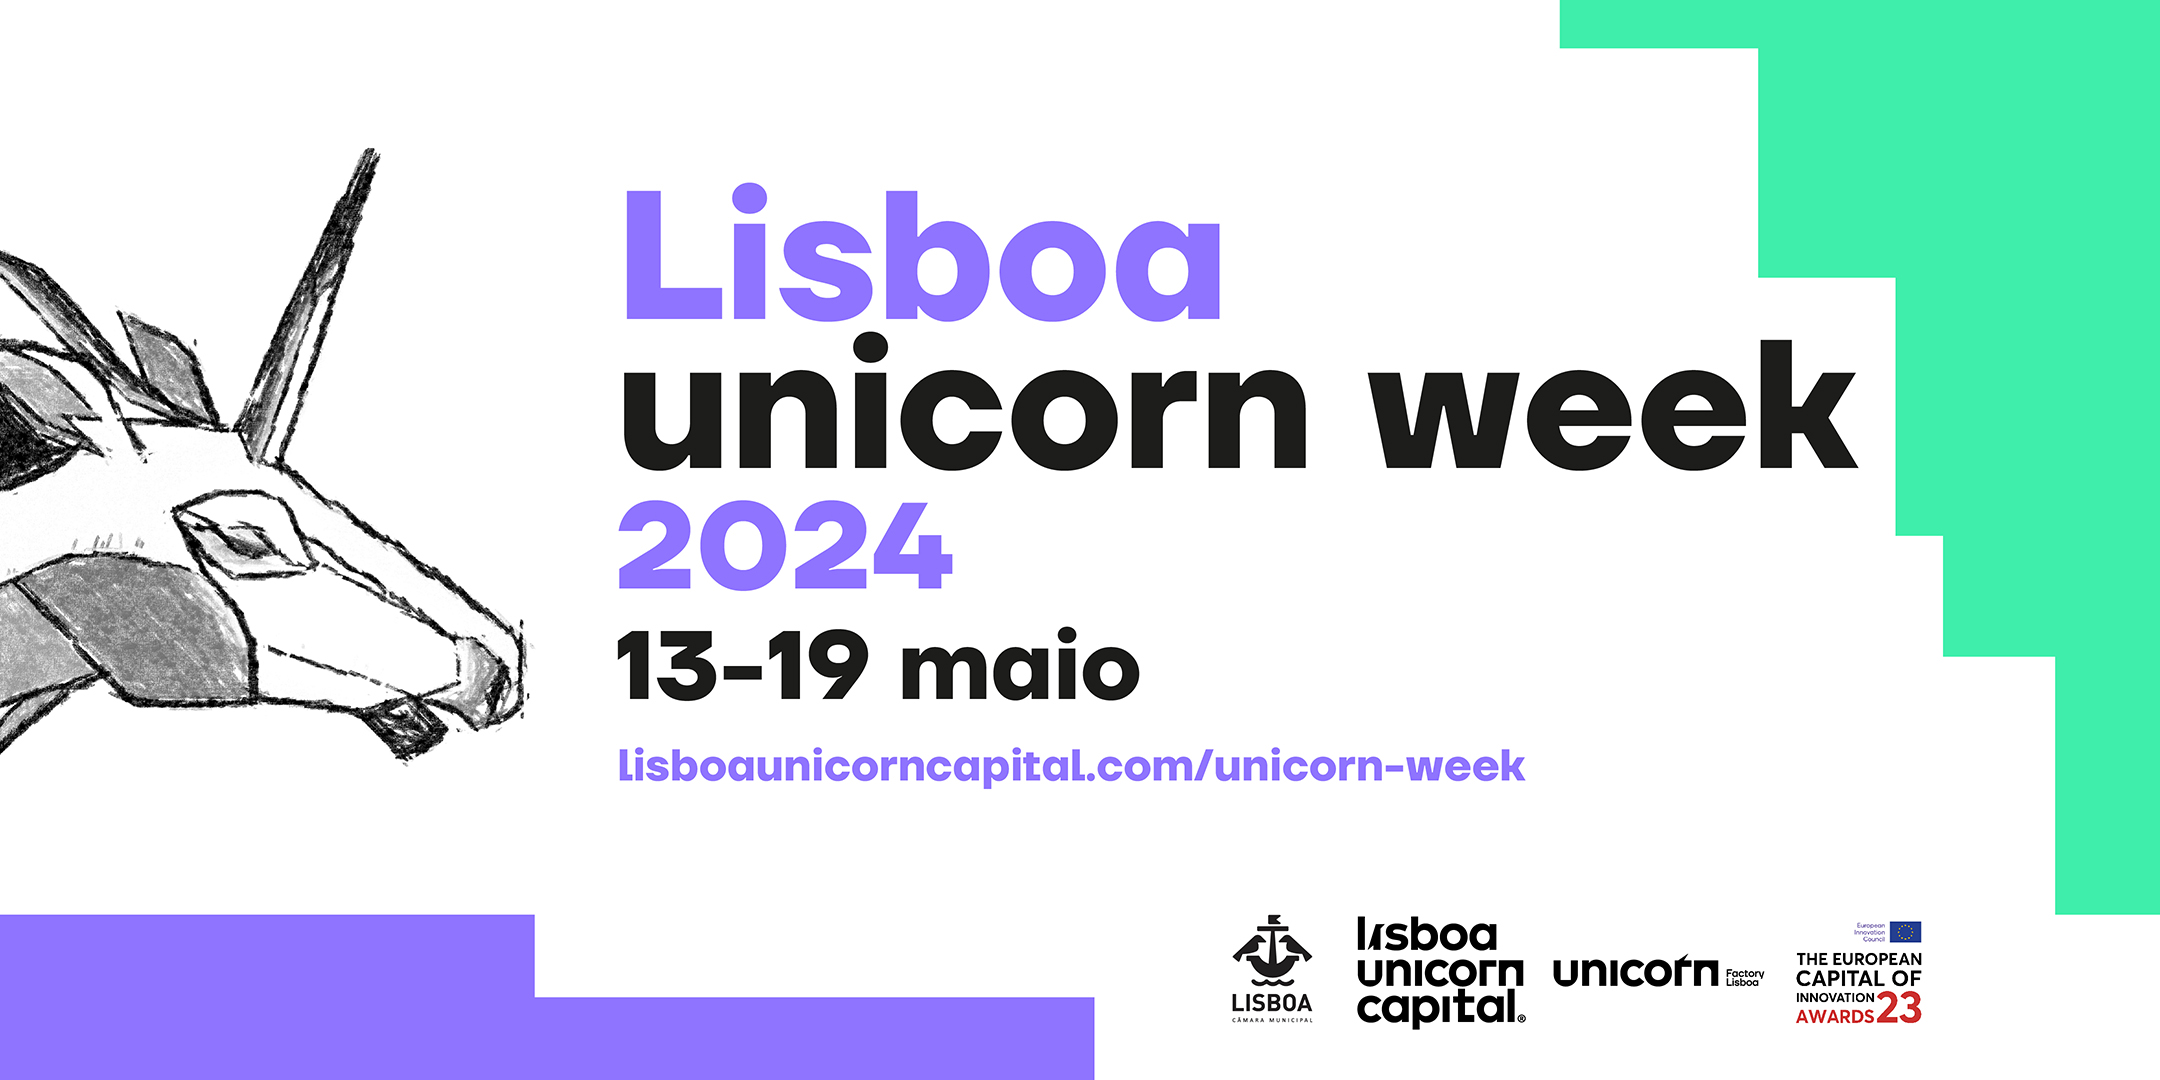 Está a chegar a 13ª Unicorn Week de 13 a 19 de maio